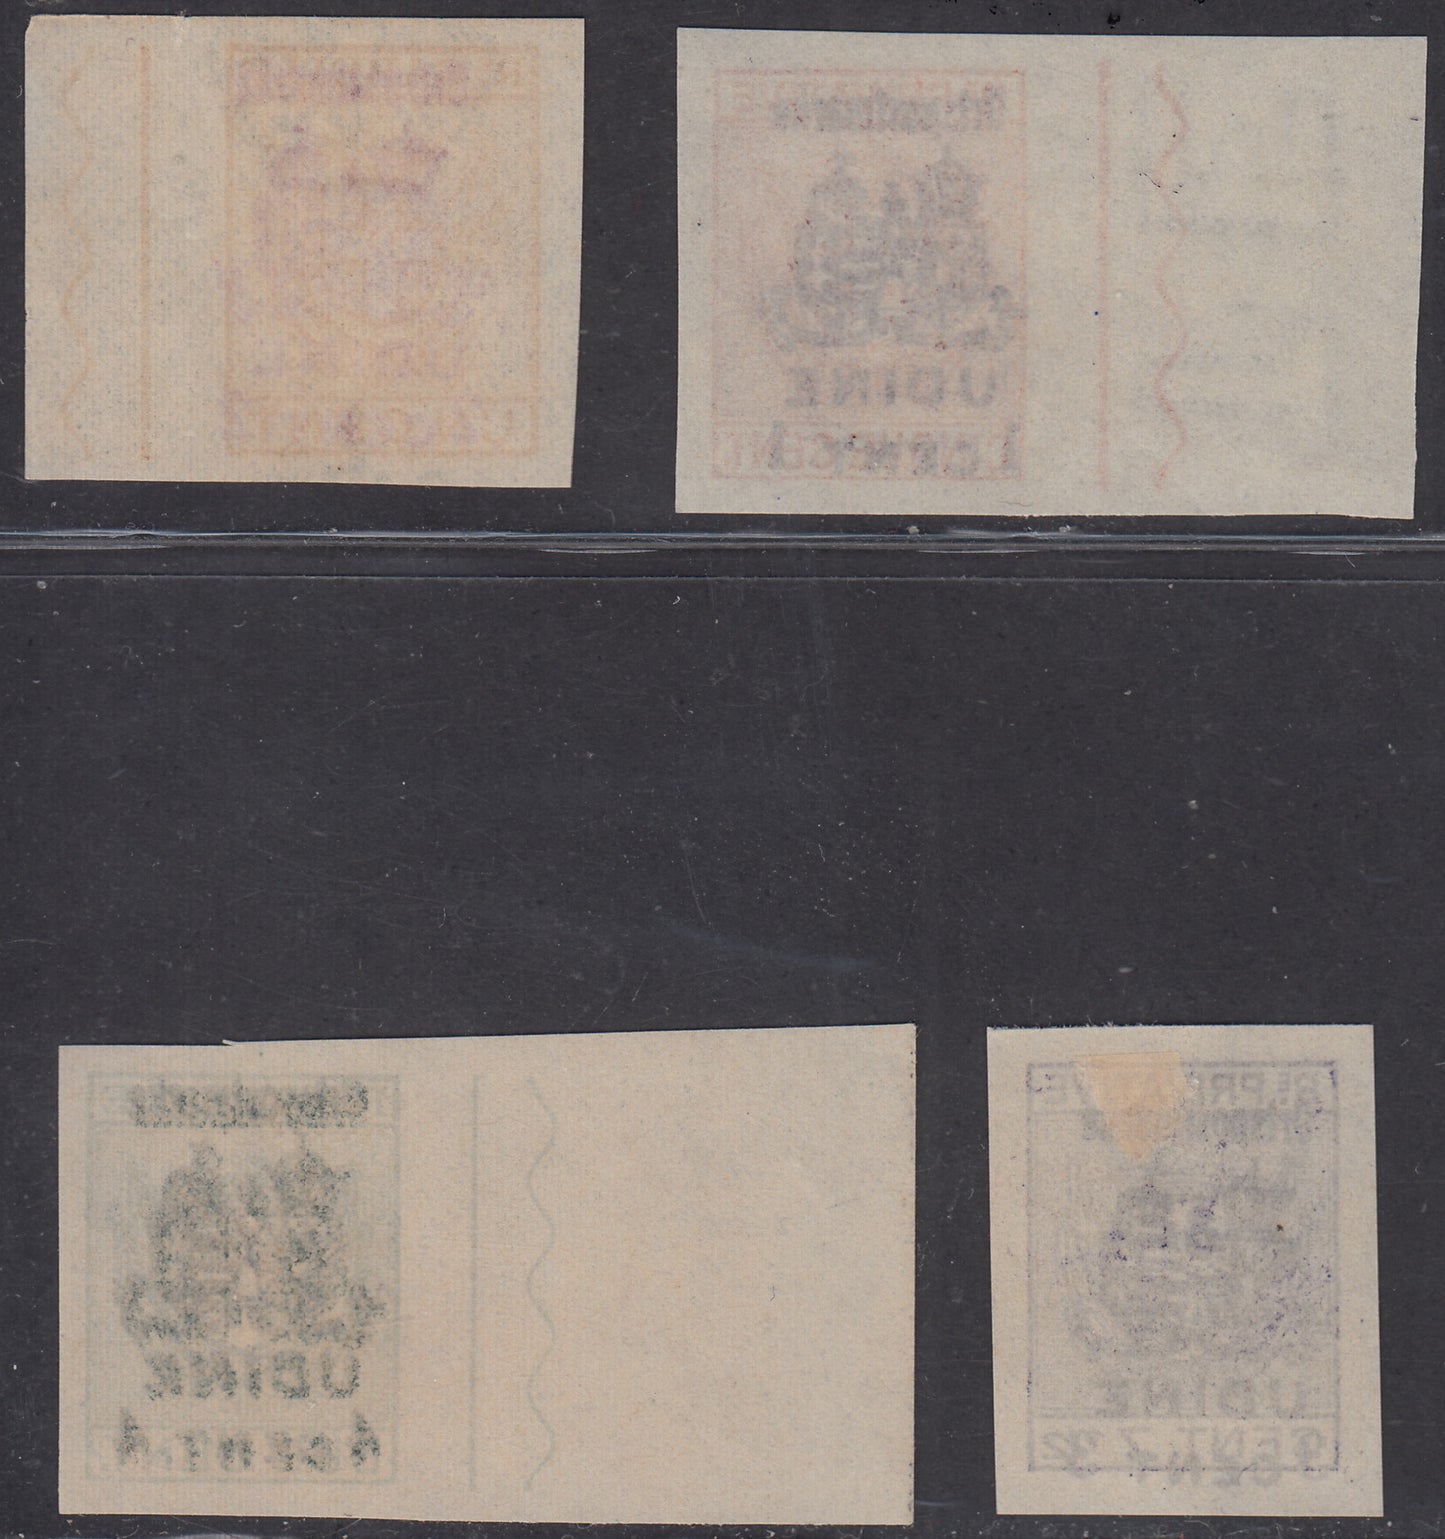 1918 -  Occupazione Austriaca del Friuli e del Veneto, francobolli di Recapito Autorizzato emessi per il comune di UDINE serie completa nuova (69/72)